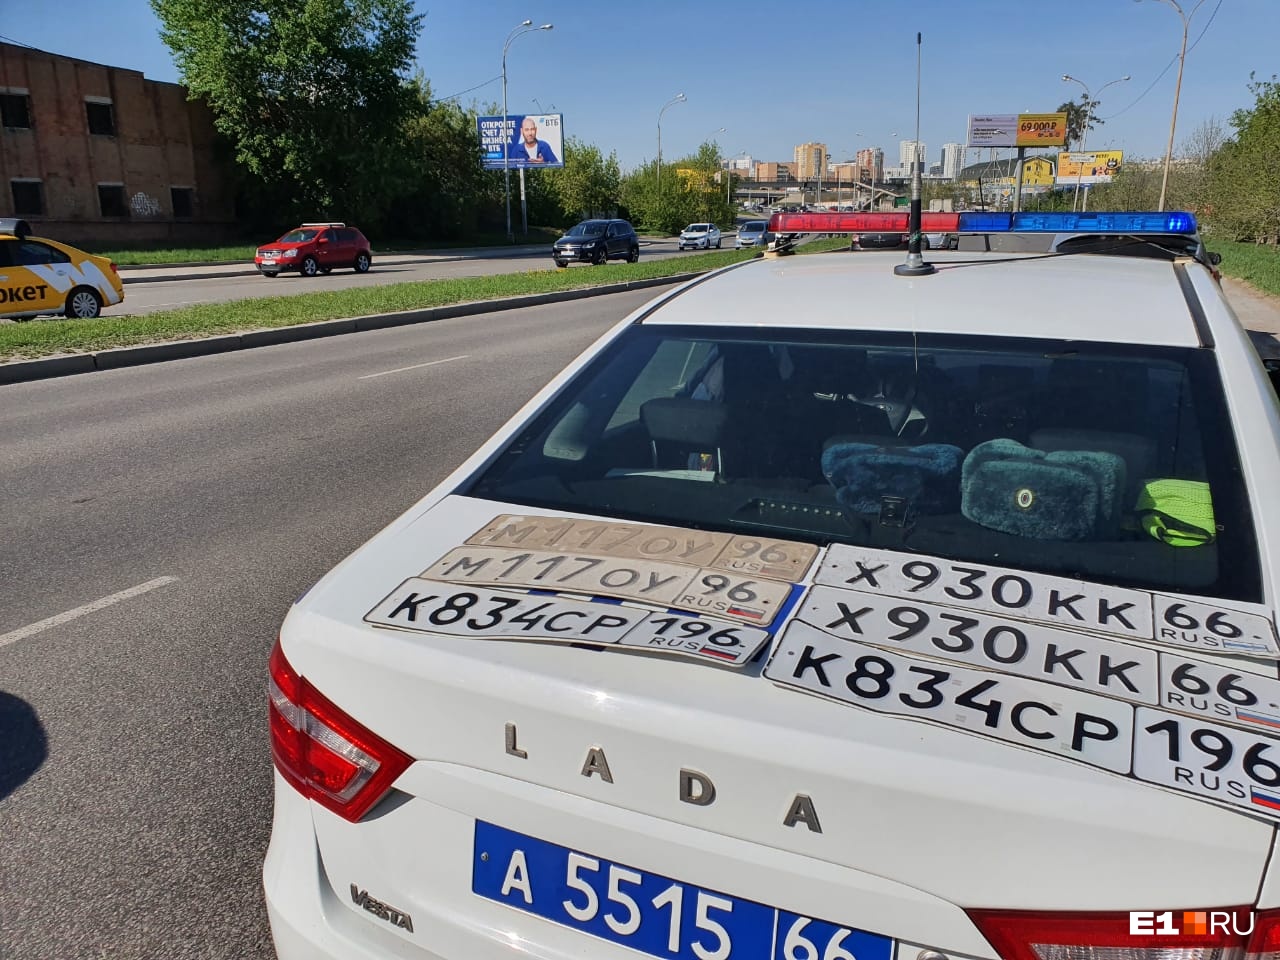 В Екатеринбурге водителей, лишенных прав, поймали с помощью мобильного приложения